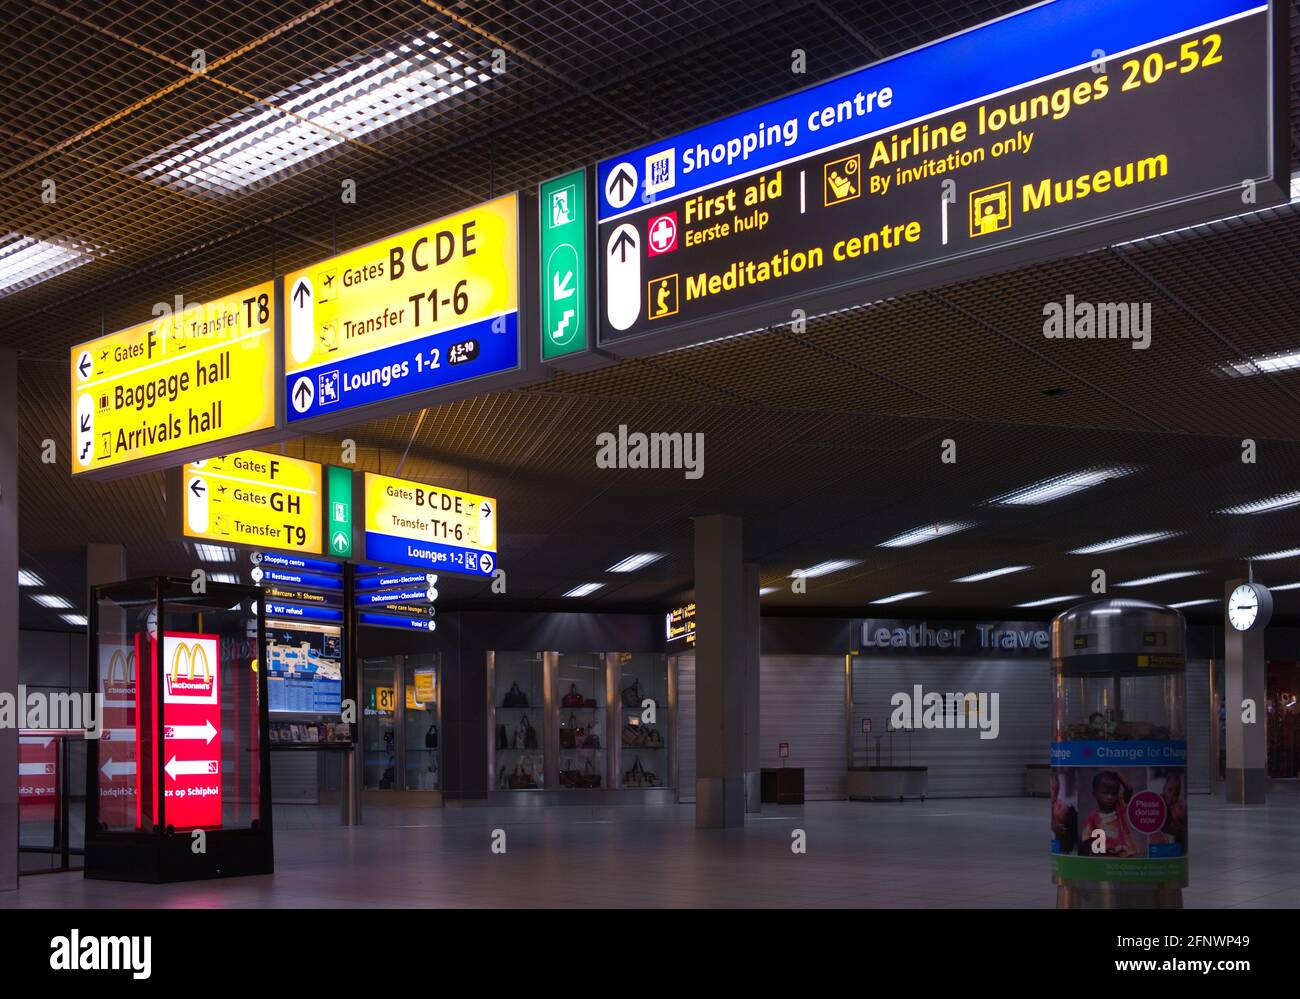 Panneaux d'information et panneaux dans le hall de l'aéroport international de Schiphol à Amsterdam. Indications pour se rendre aux portails, aux halls de bagages et aux arrivées Banque D'Images